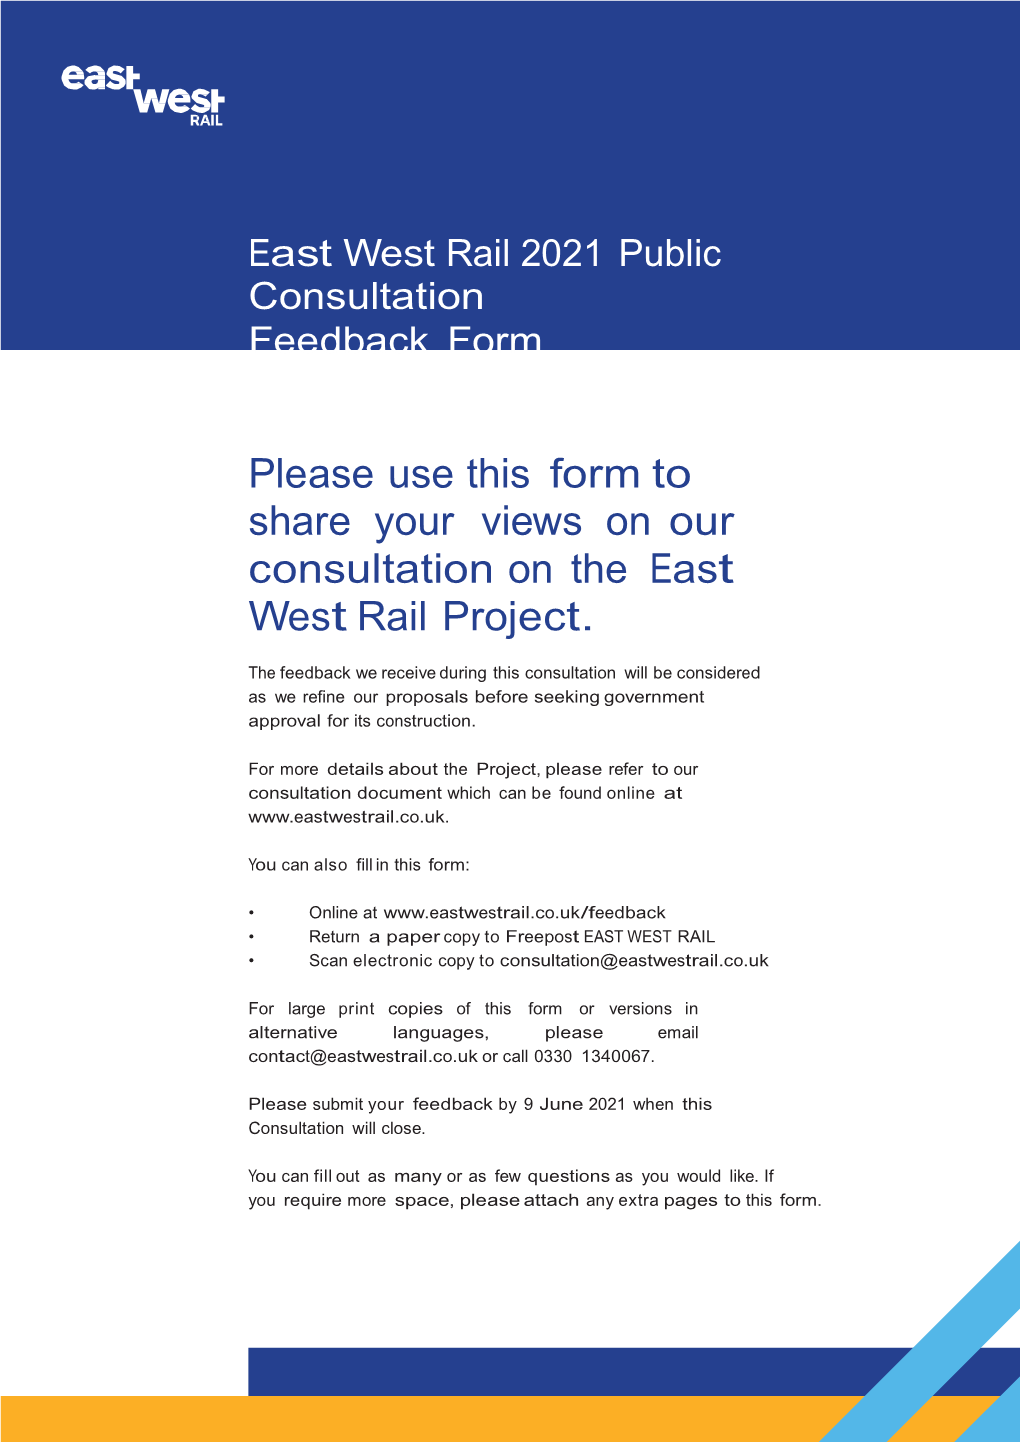 Roxton PC Response to EWR Consultation